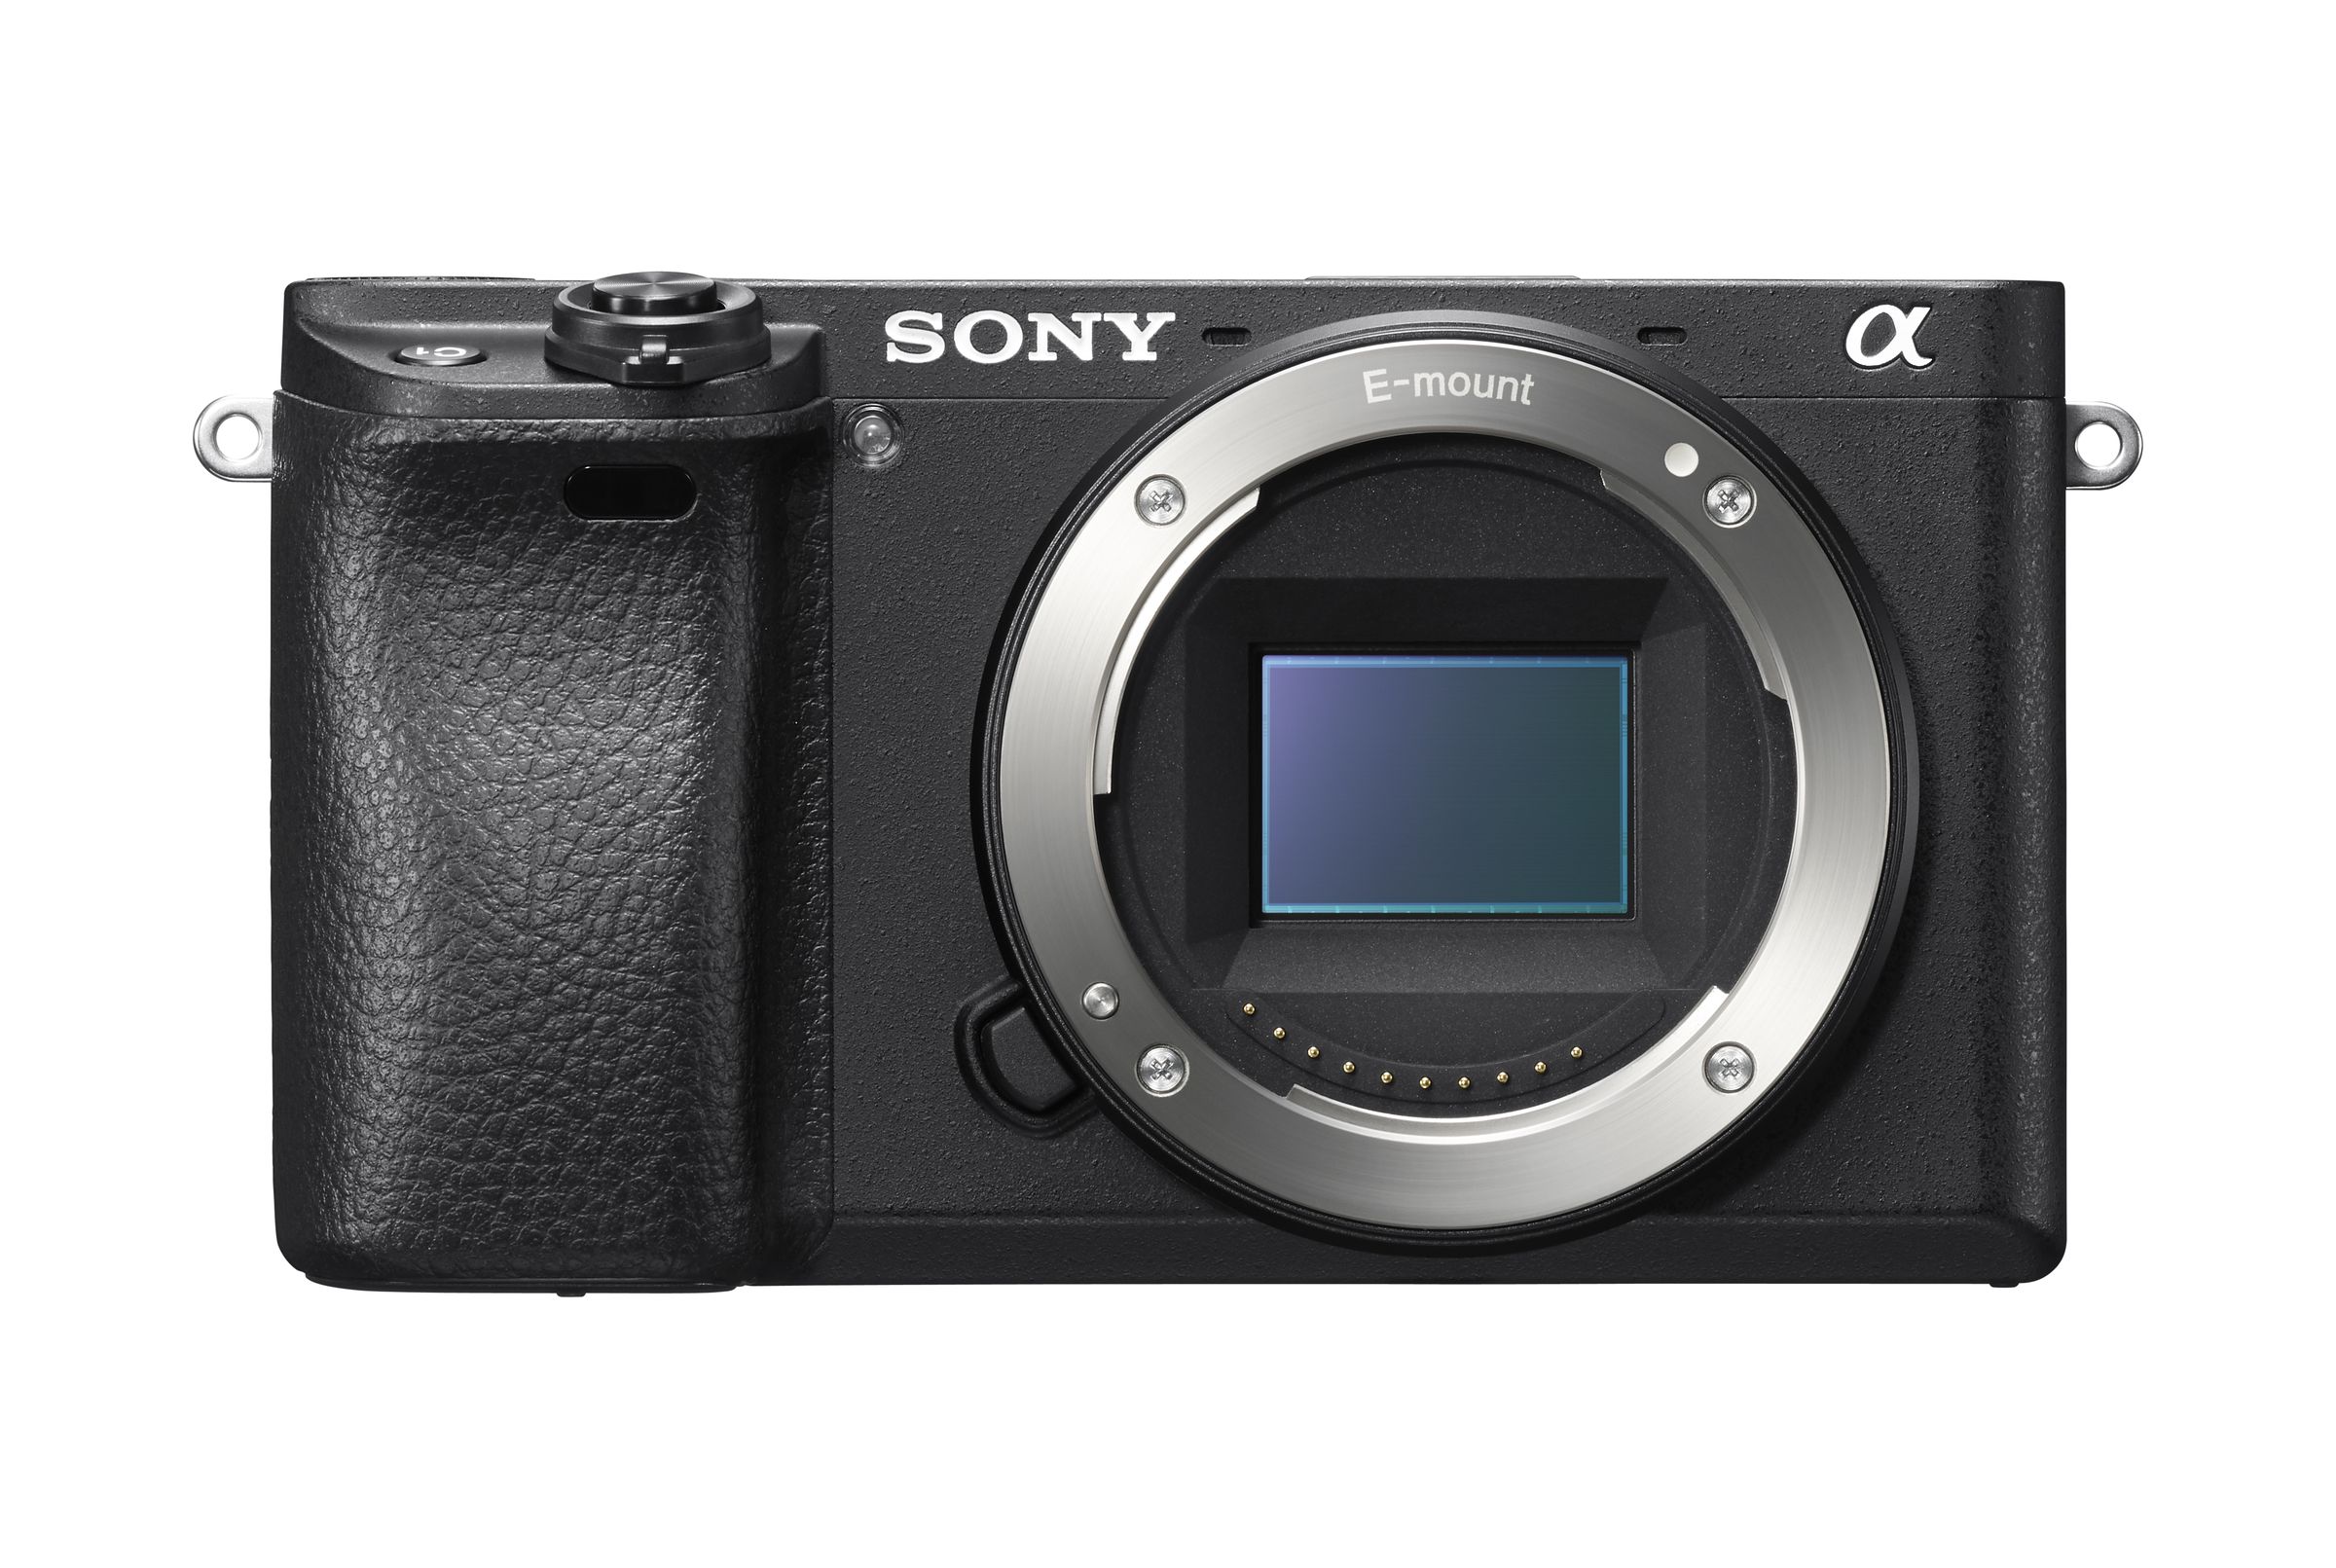 Sony a6300 in photos